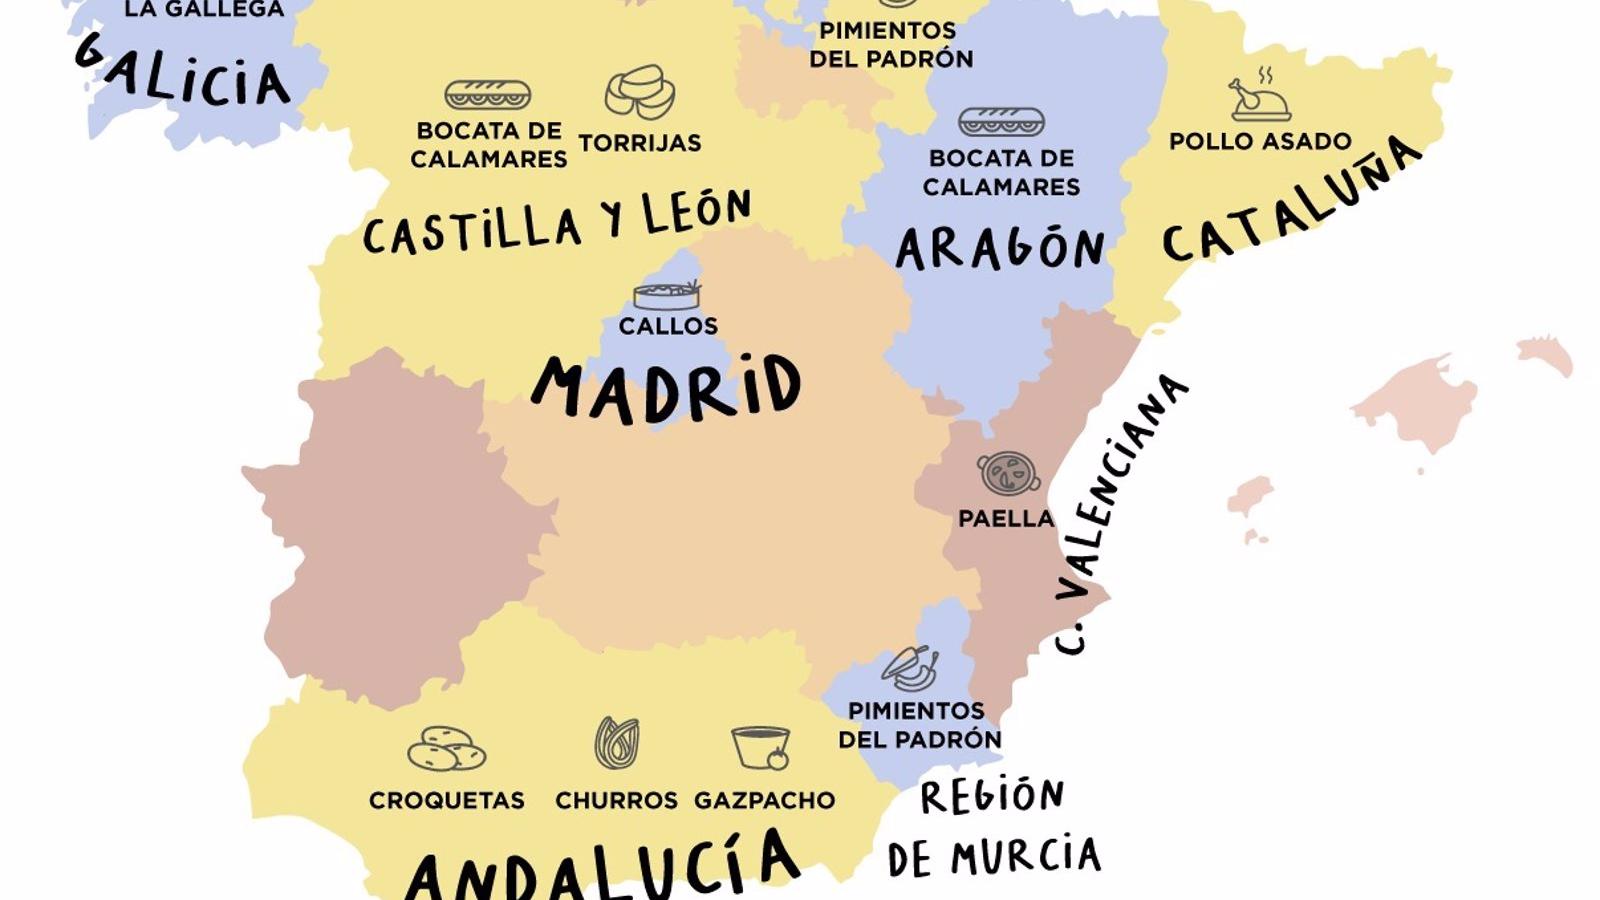 Callos, torrijas, cachopo y gazpacho, los platos españoles más pedidos a domicilio en la Comunidad de Madrid